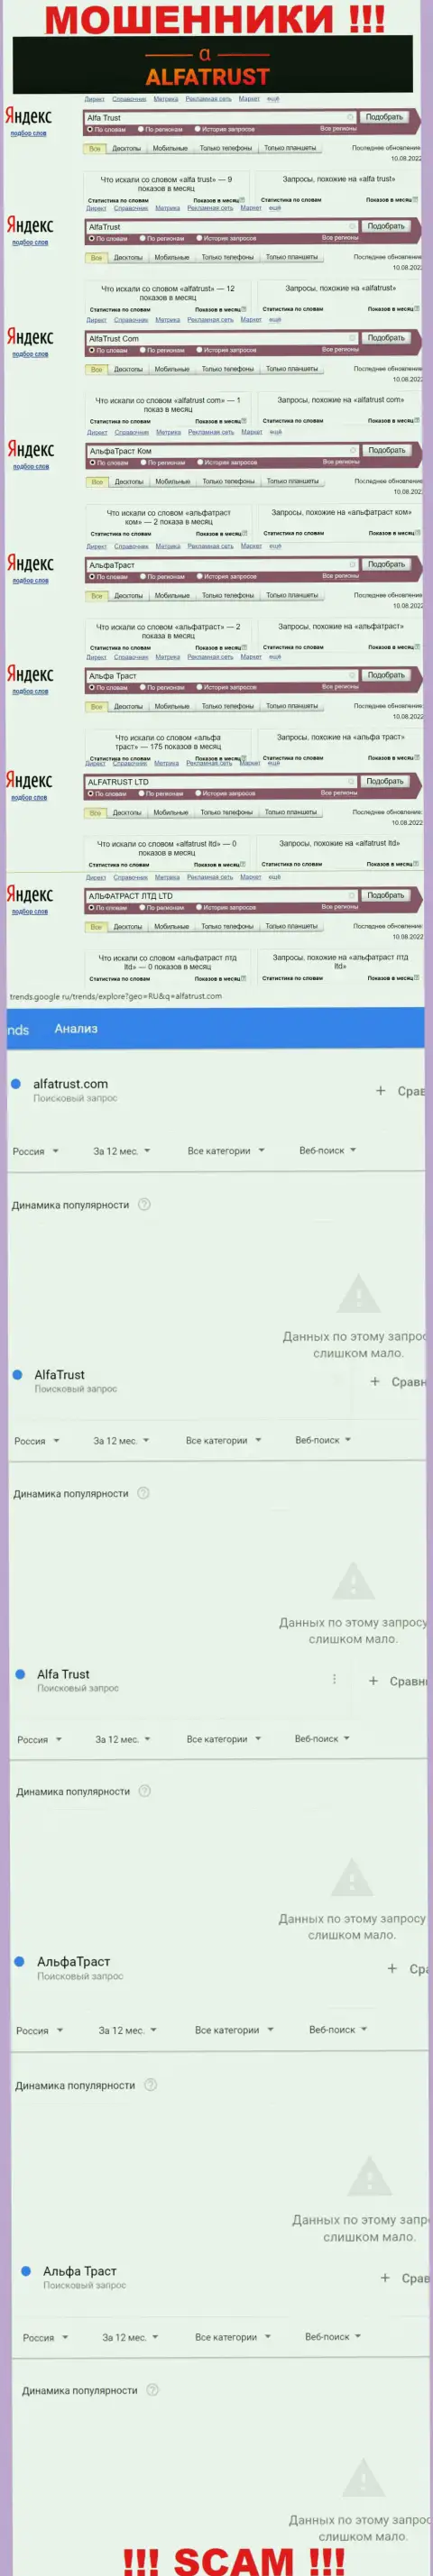 Итог online-запросов инфы про мошенников AlfaTrust в интернете